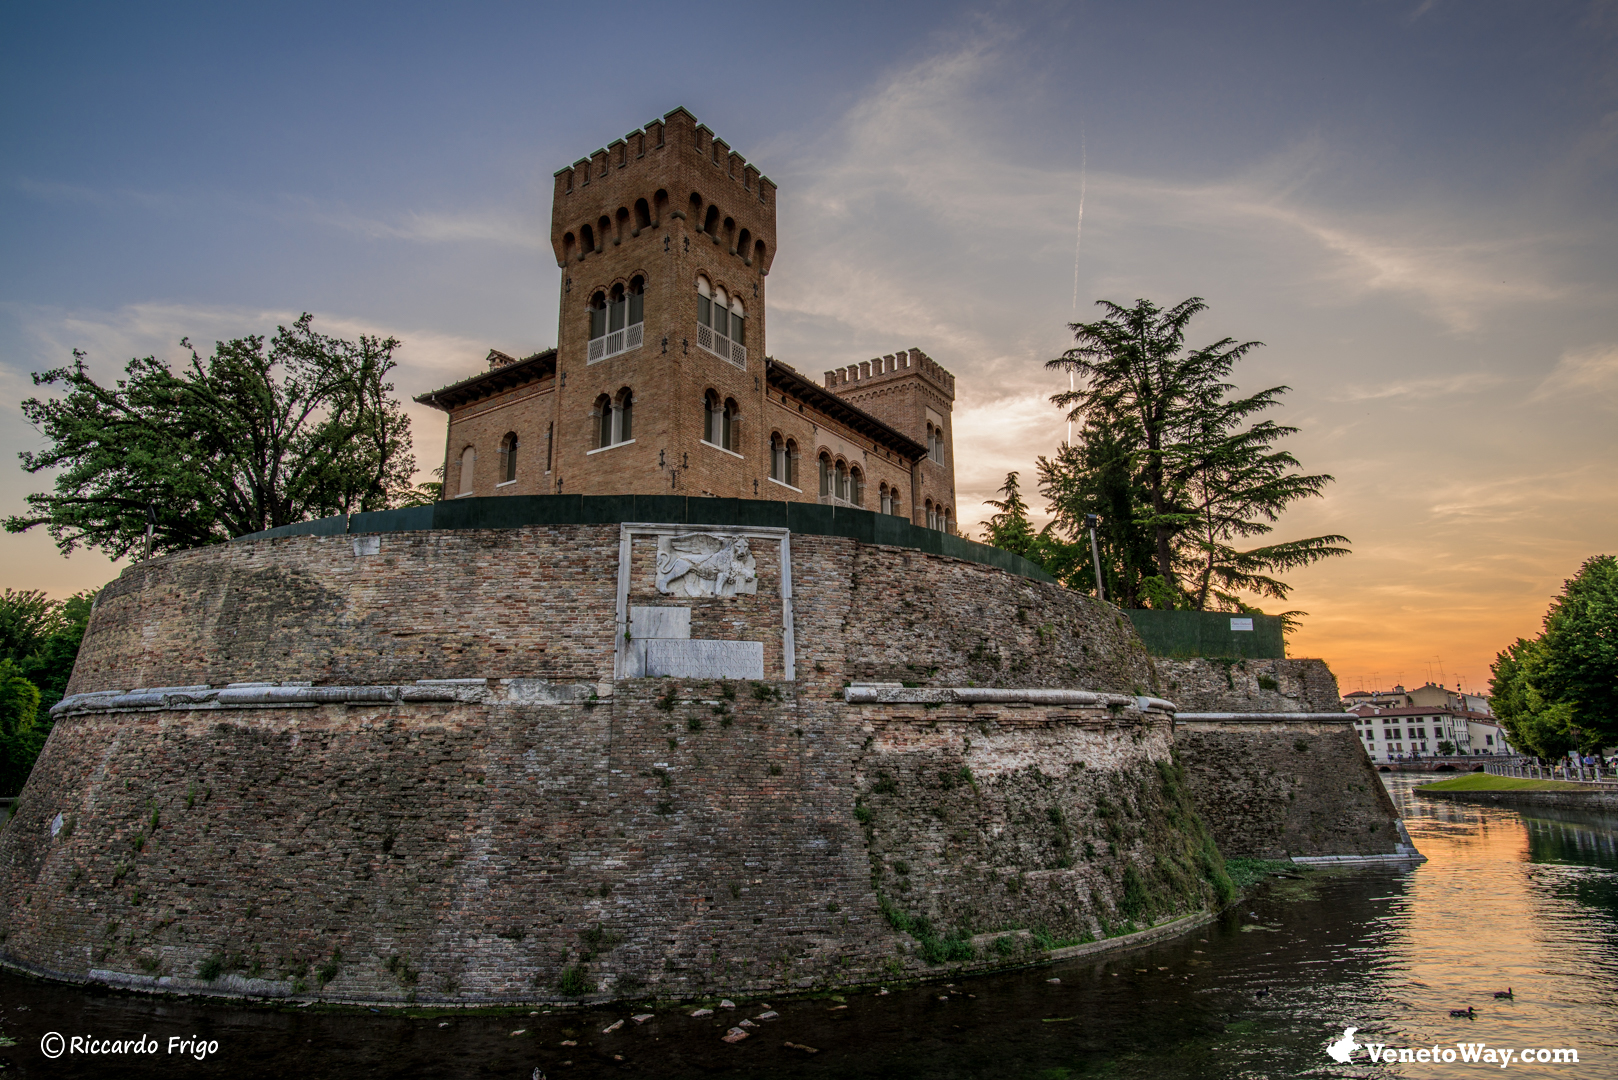 Le Mura di Treviso